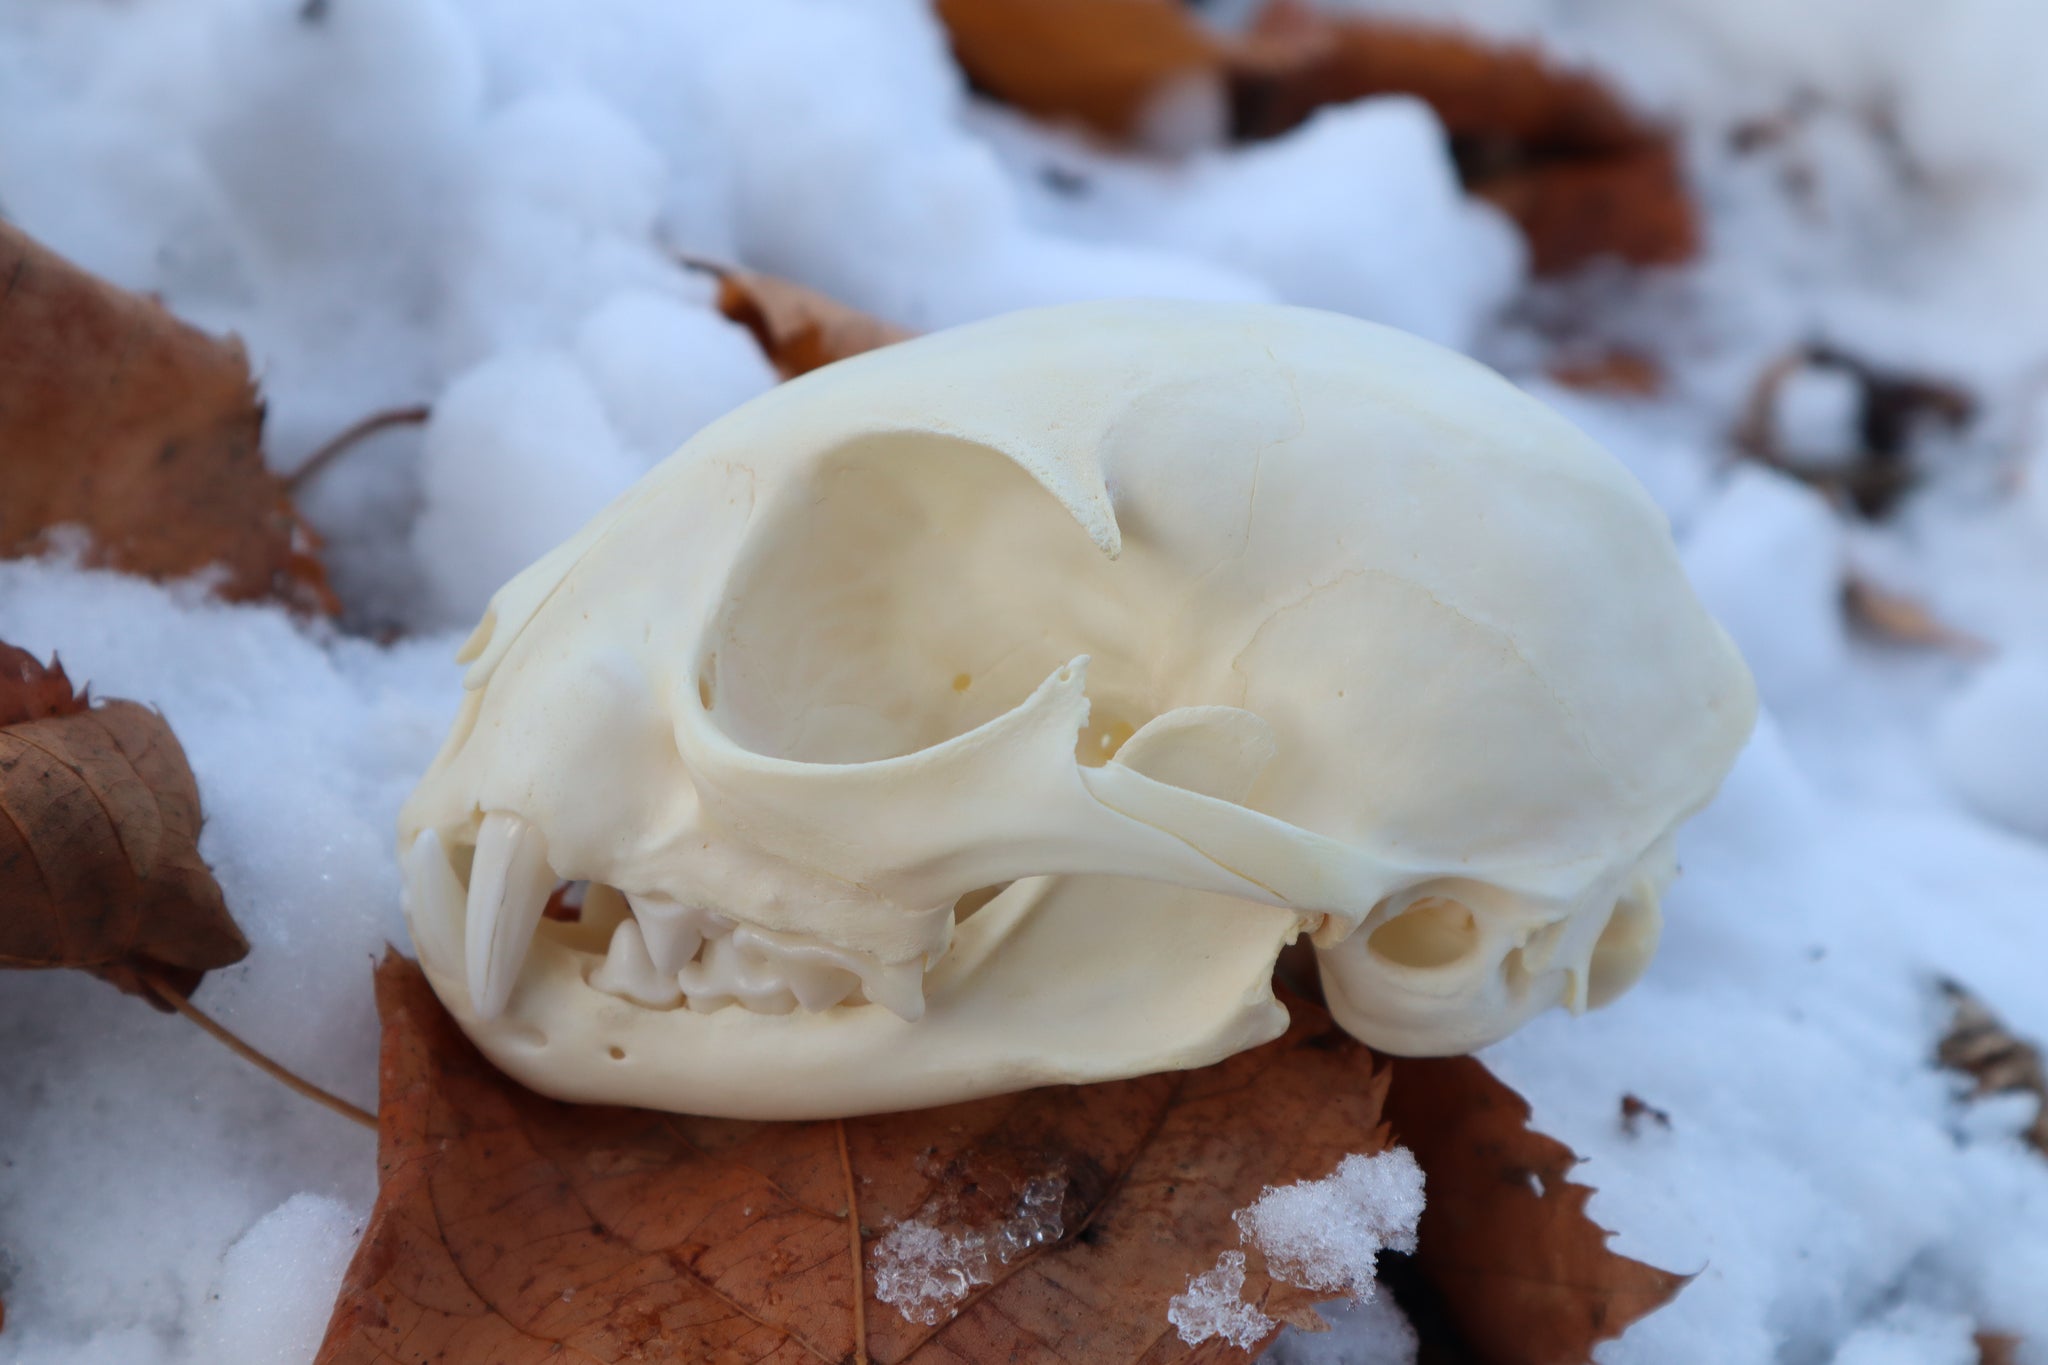 Juvenile Bobcat Skull